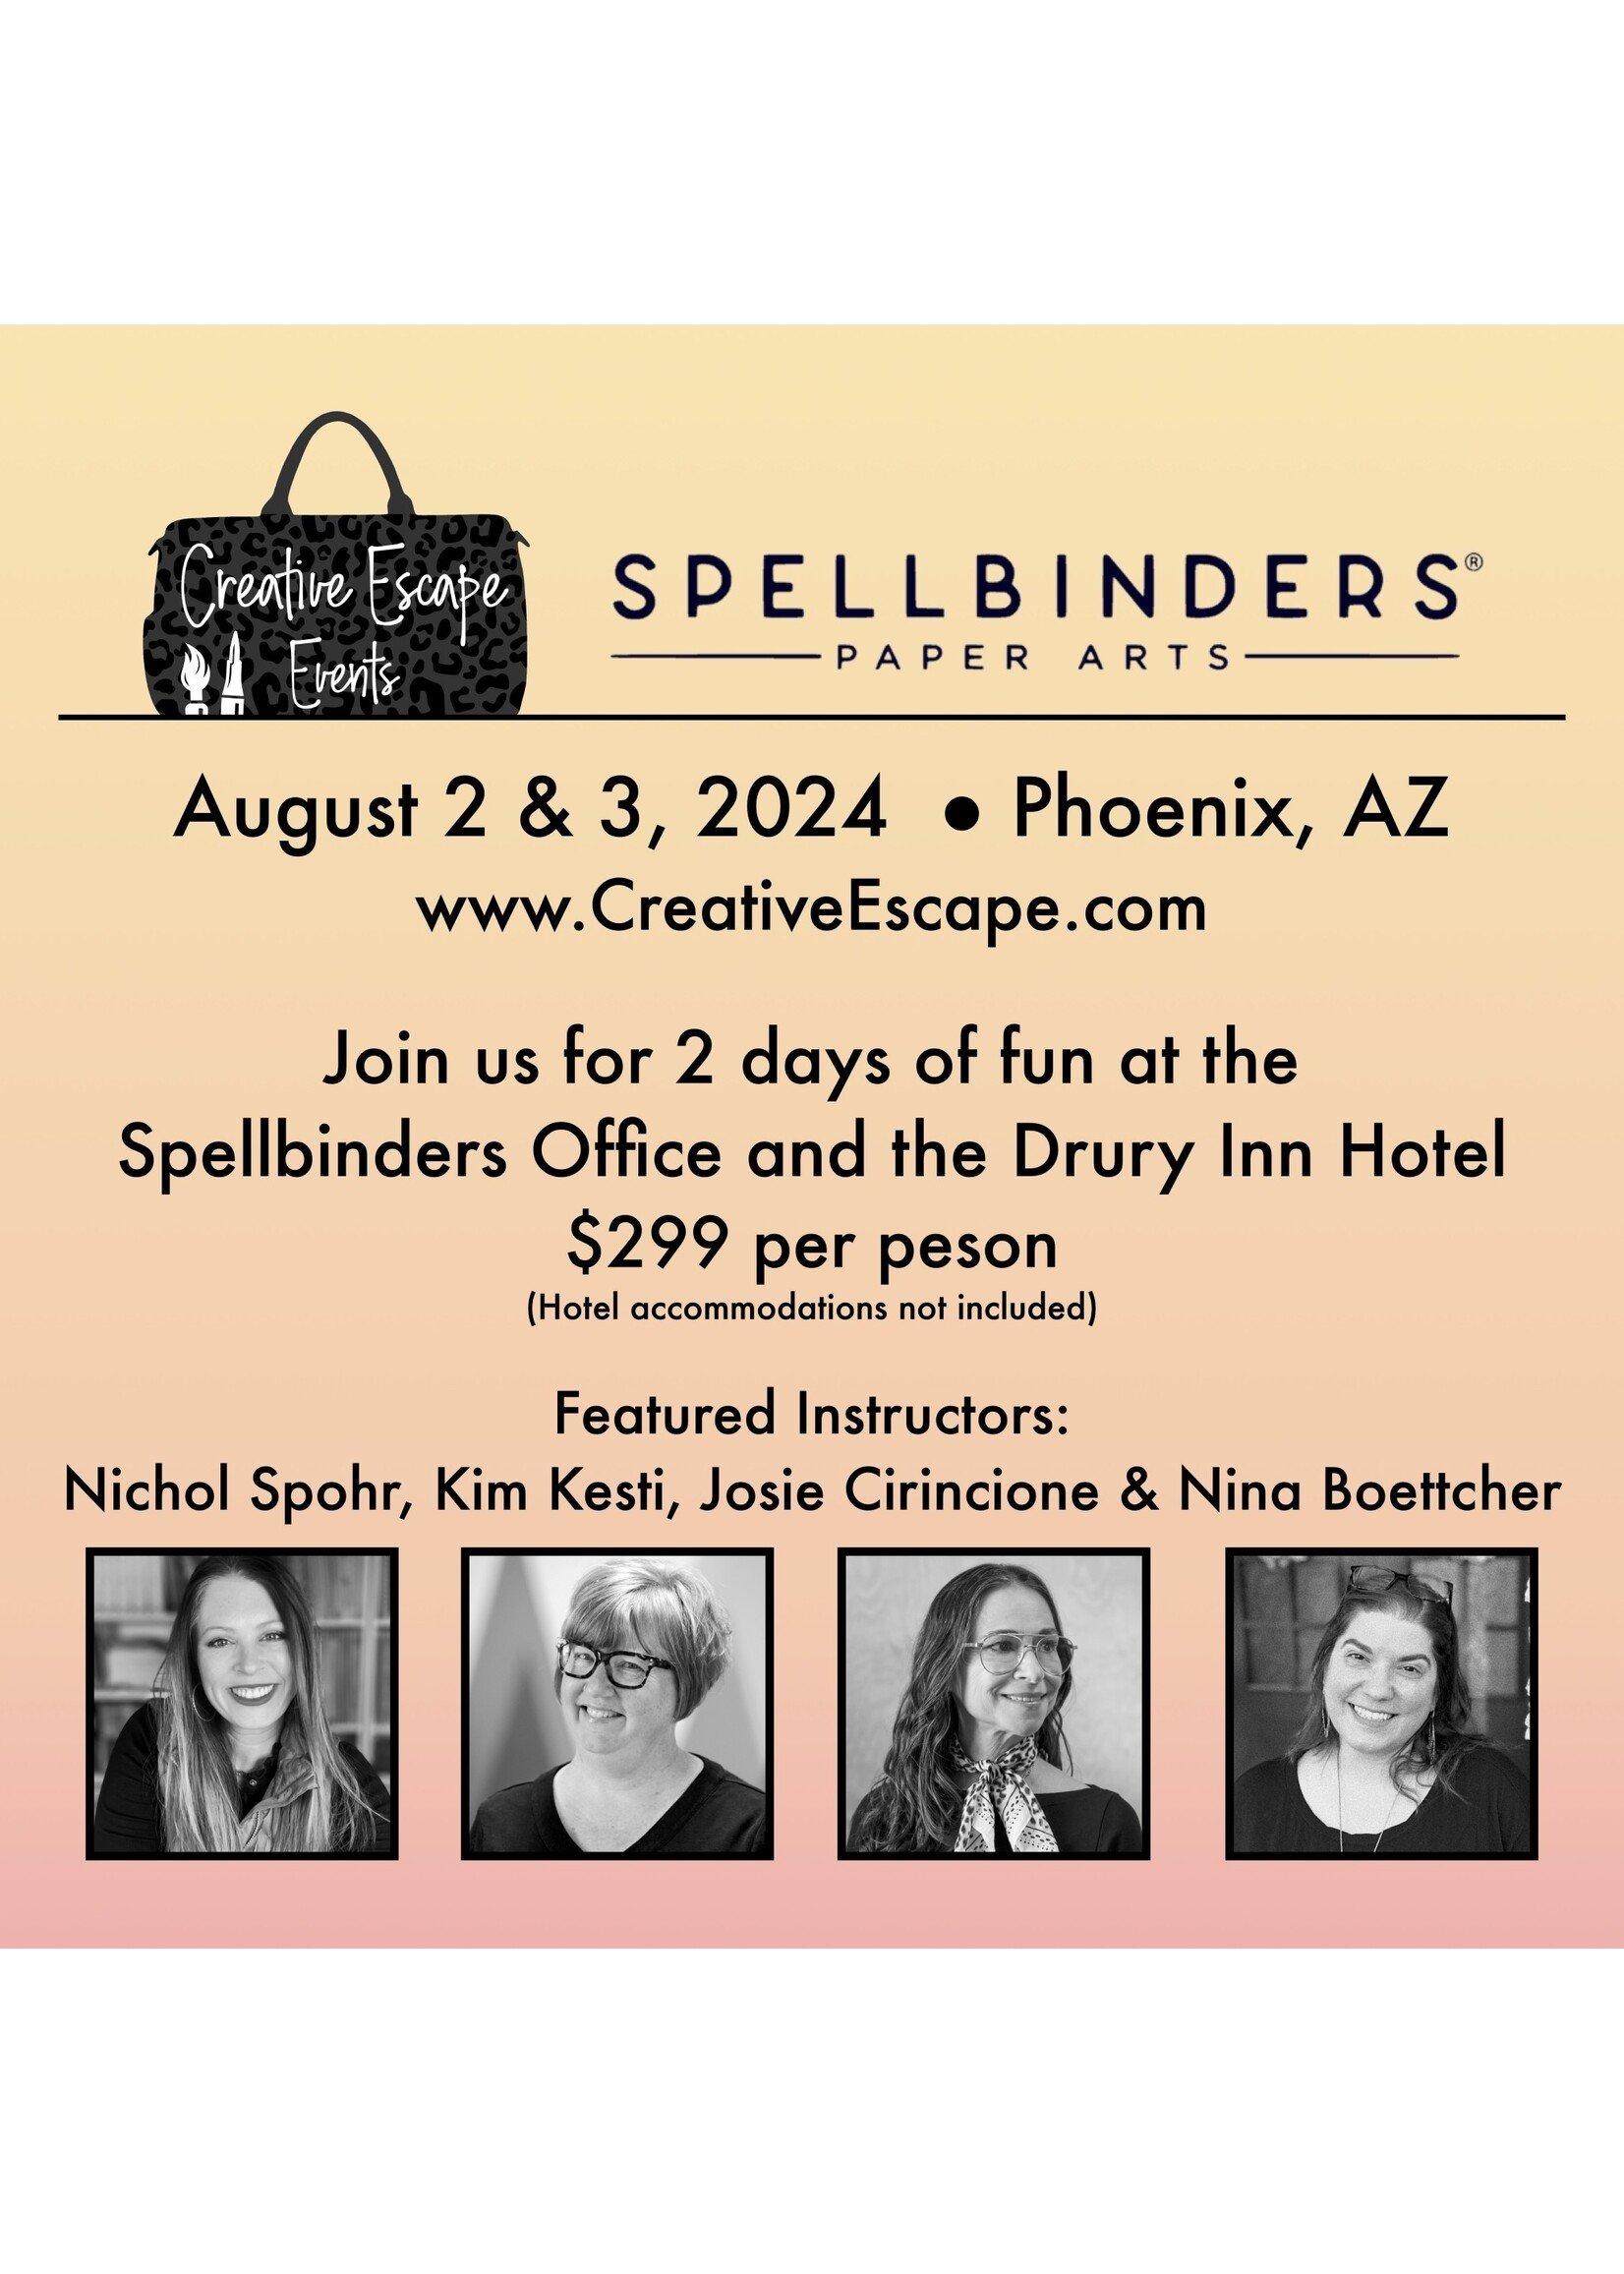 Creative Escape Spellbinders Weekend Event in Arizona